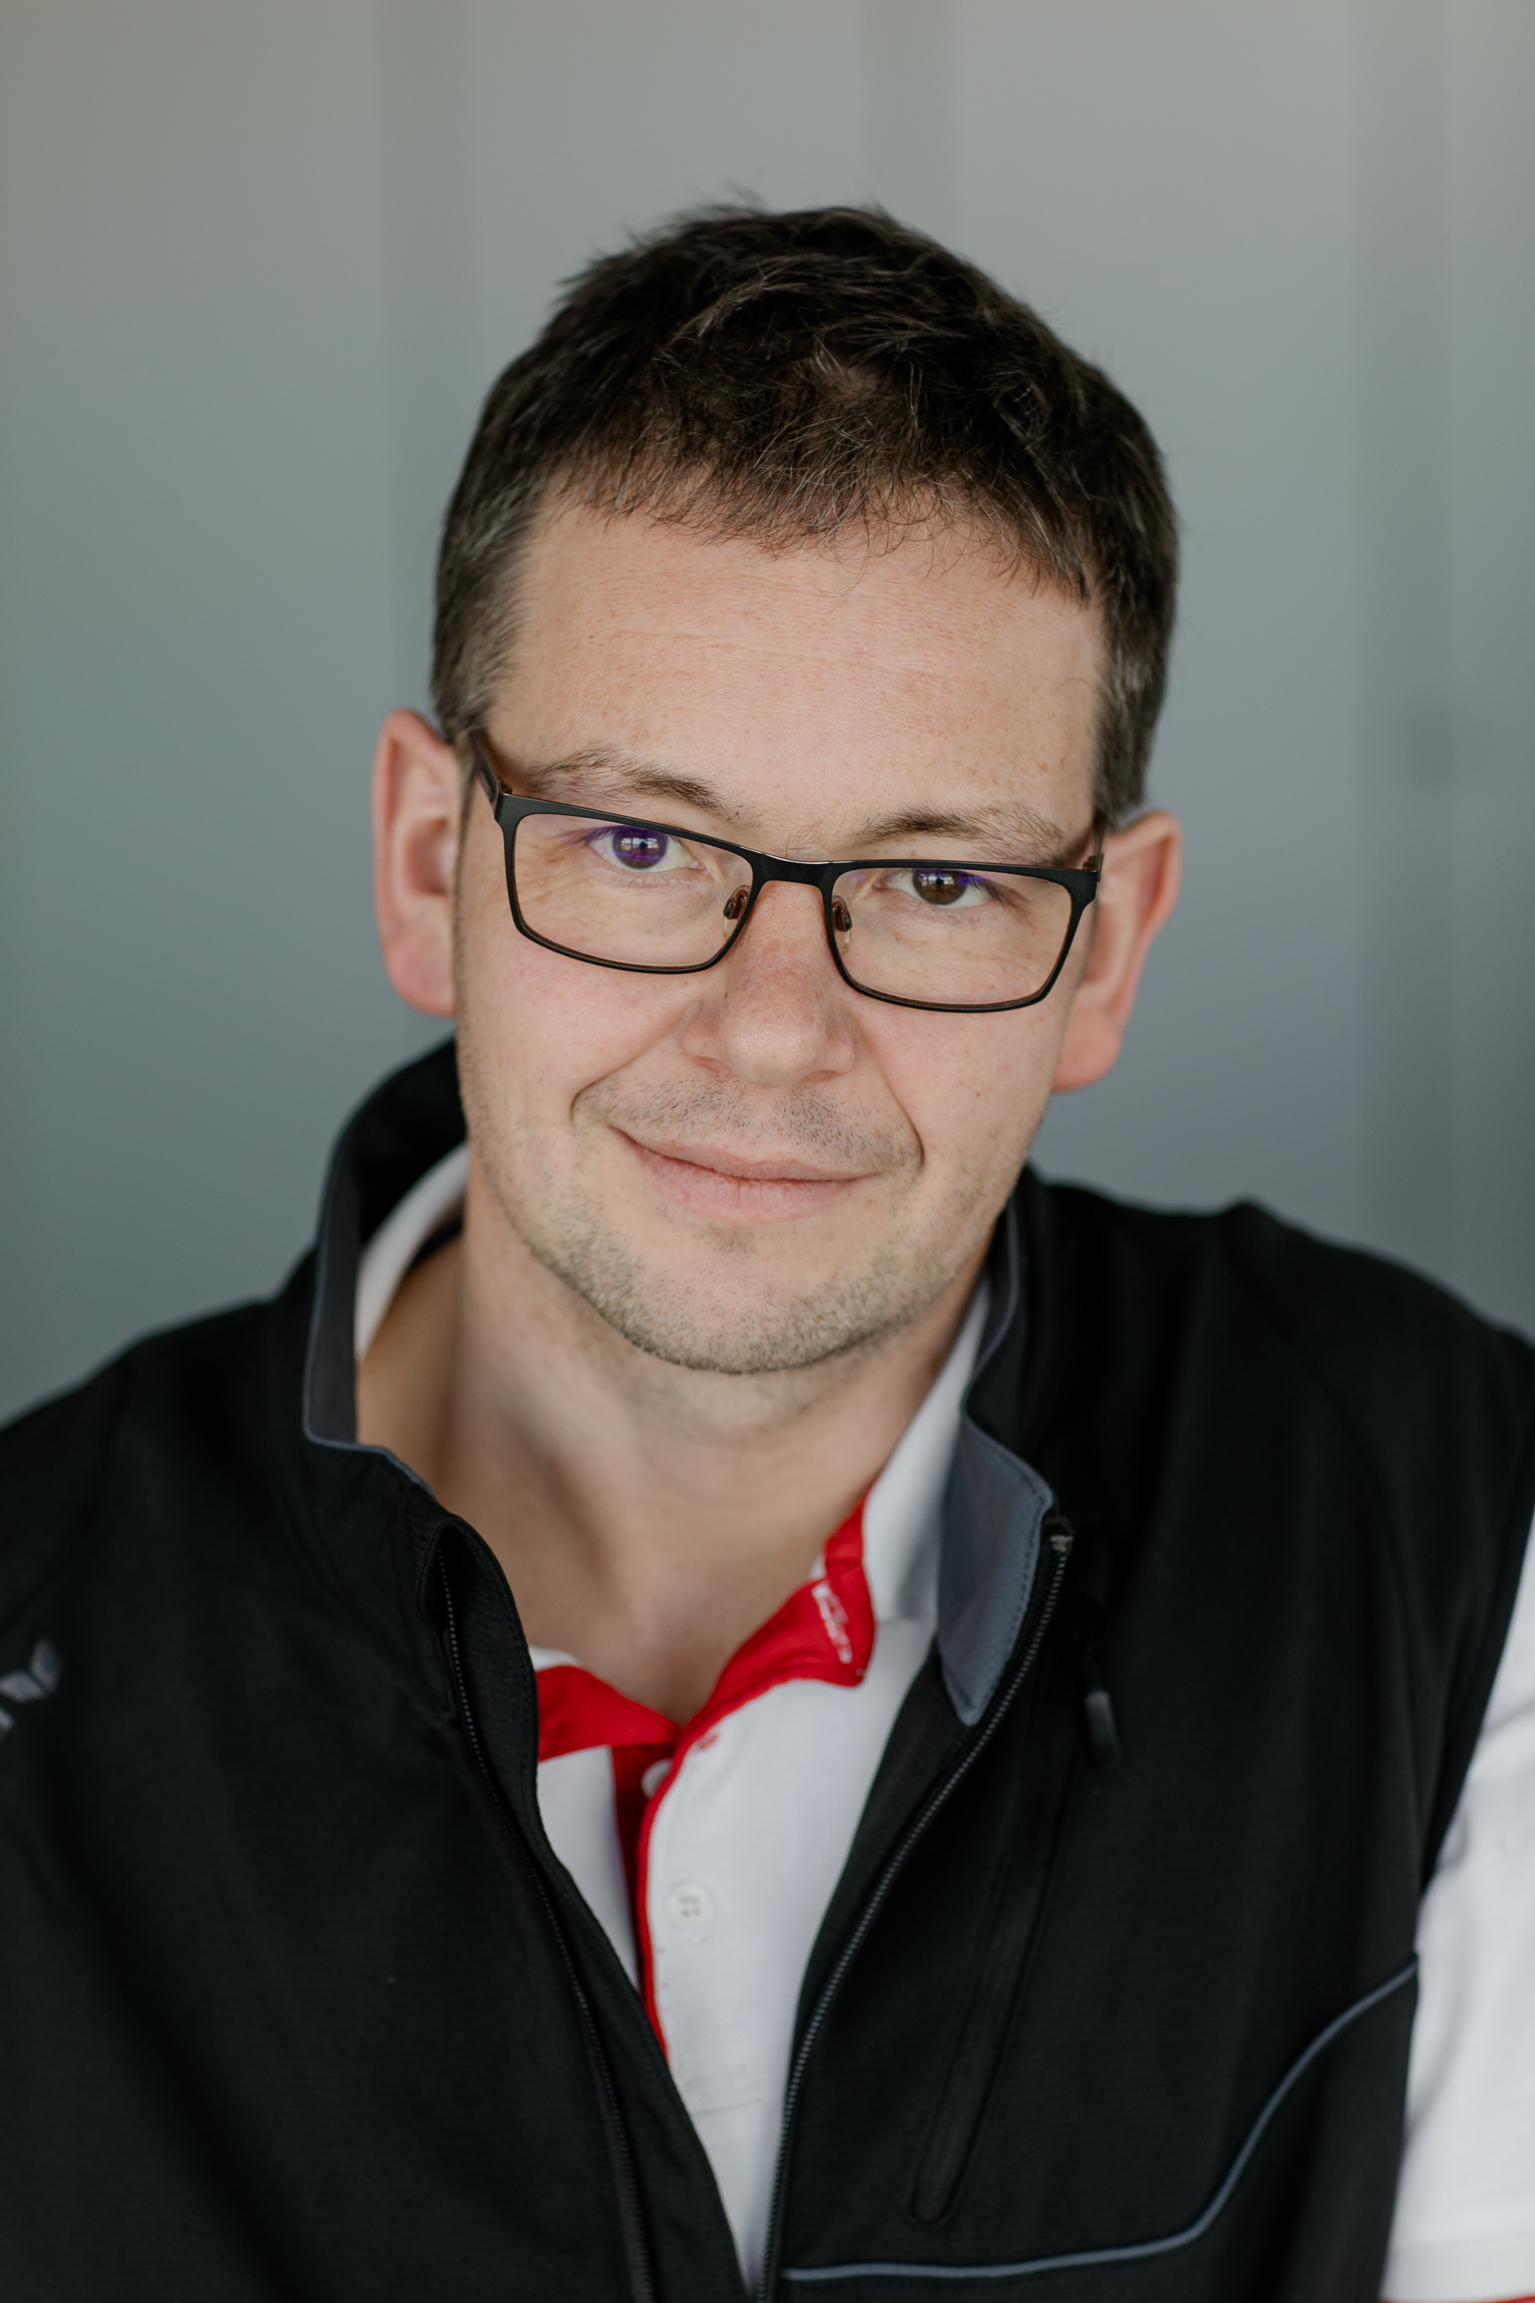 Andreas Bausch im Portrait mit dunkler Weste und weißem Polohemd mit roten mbk Akzenten.